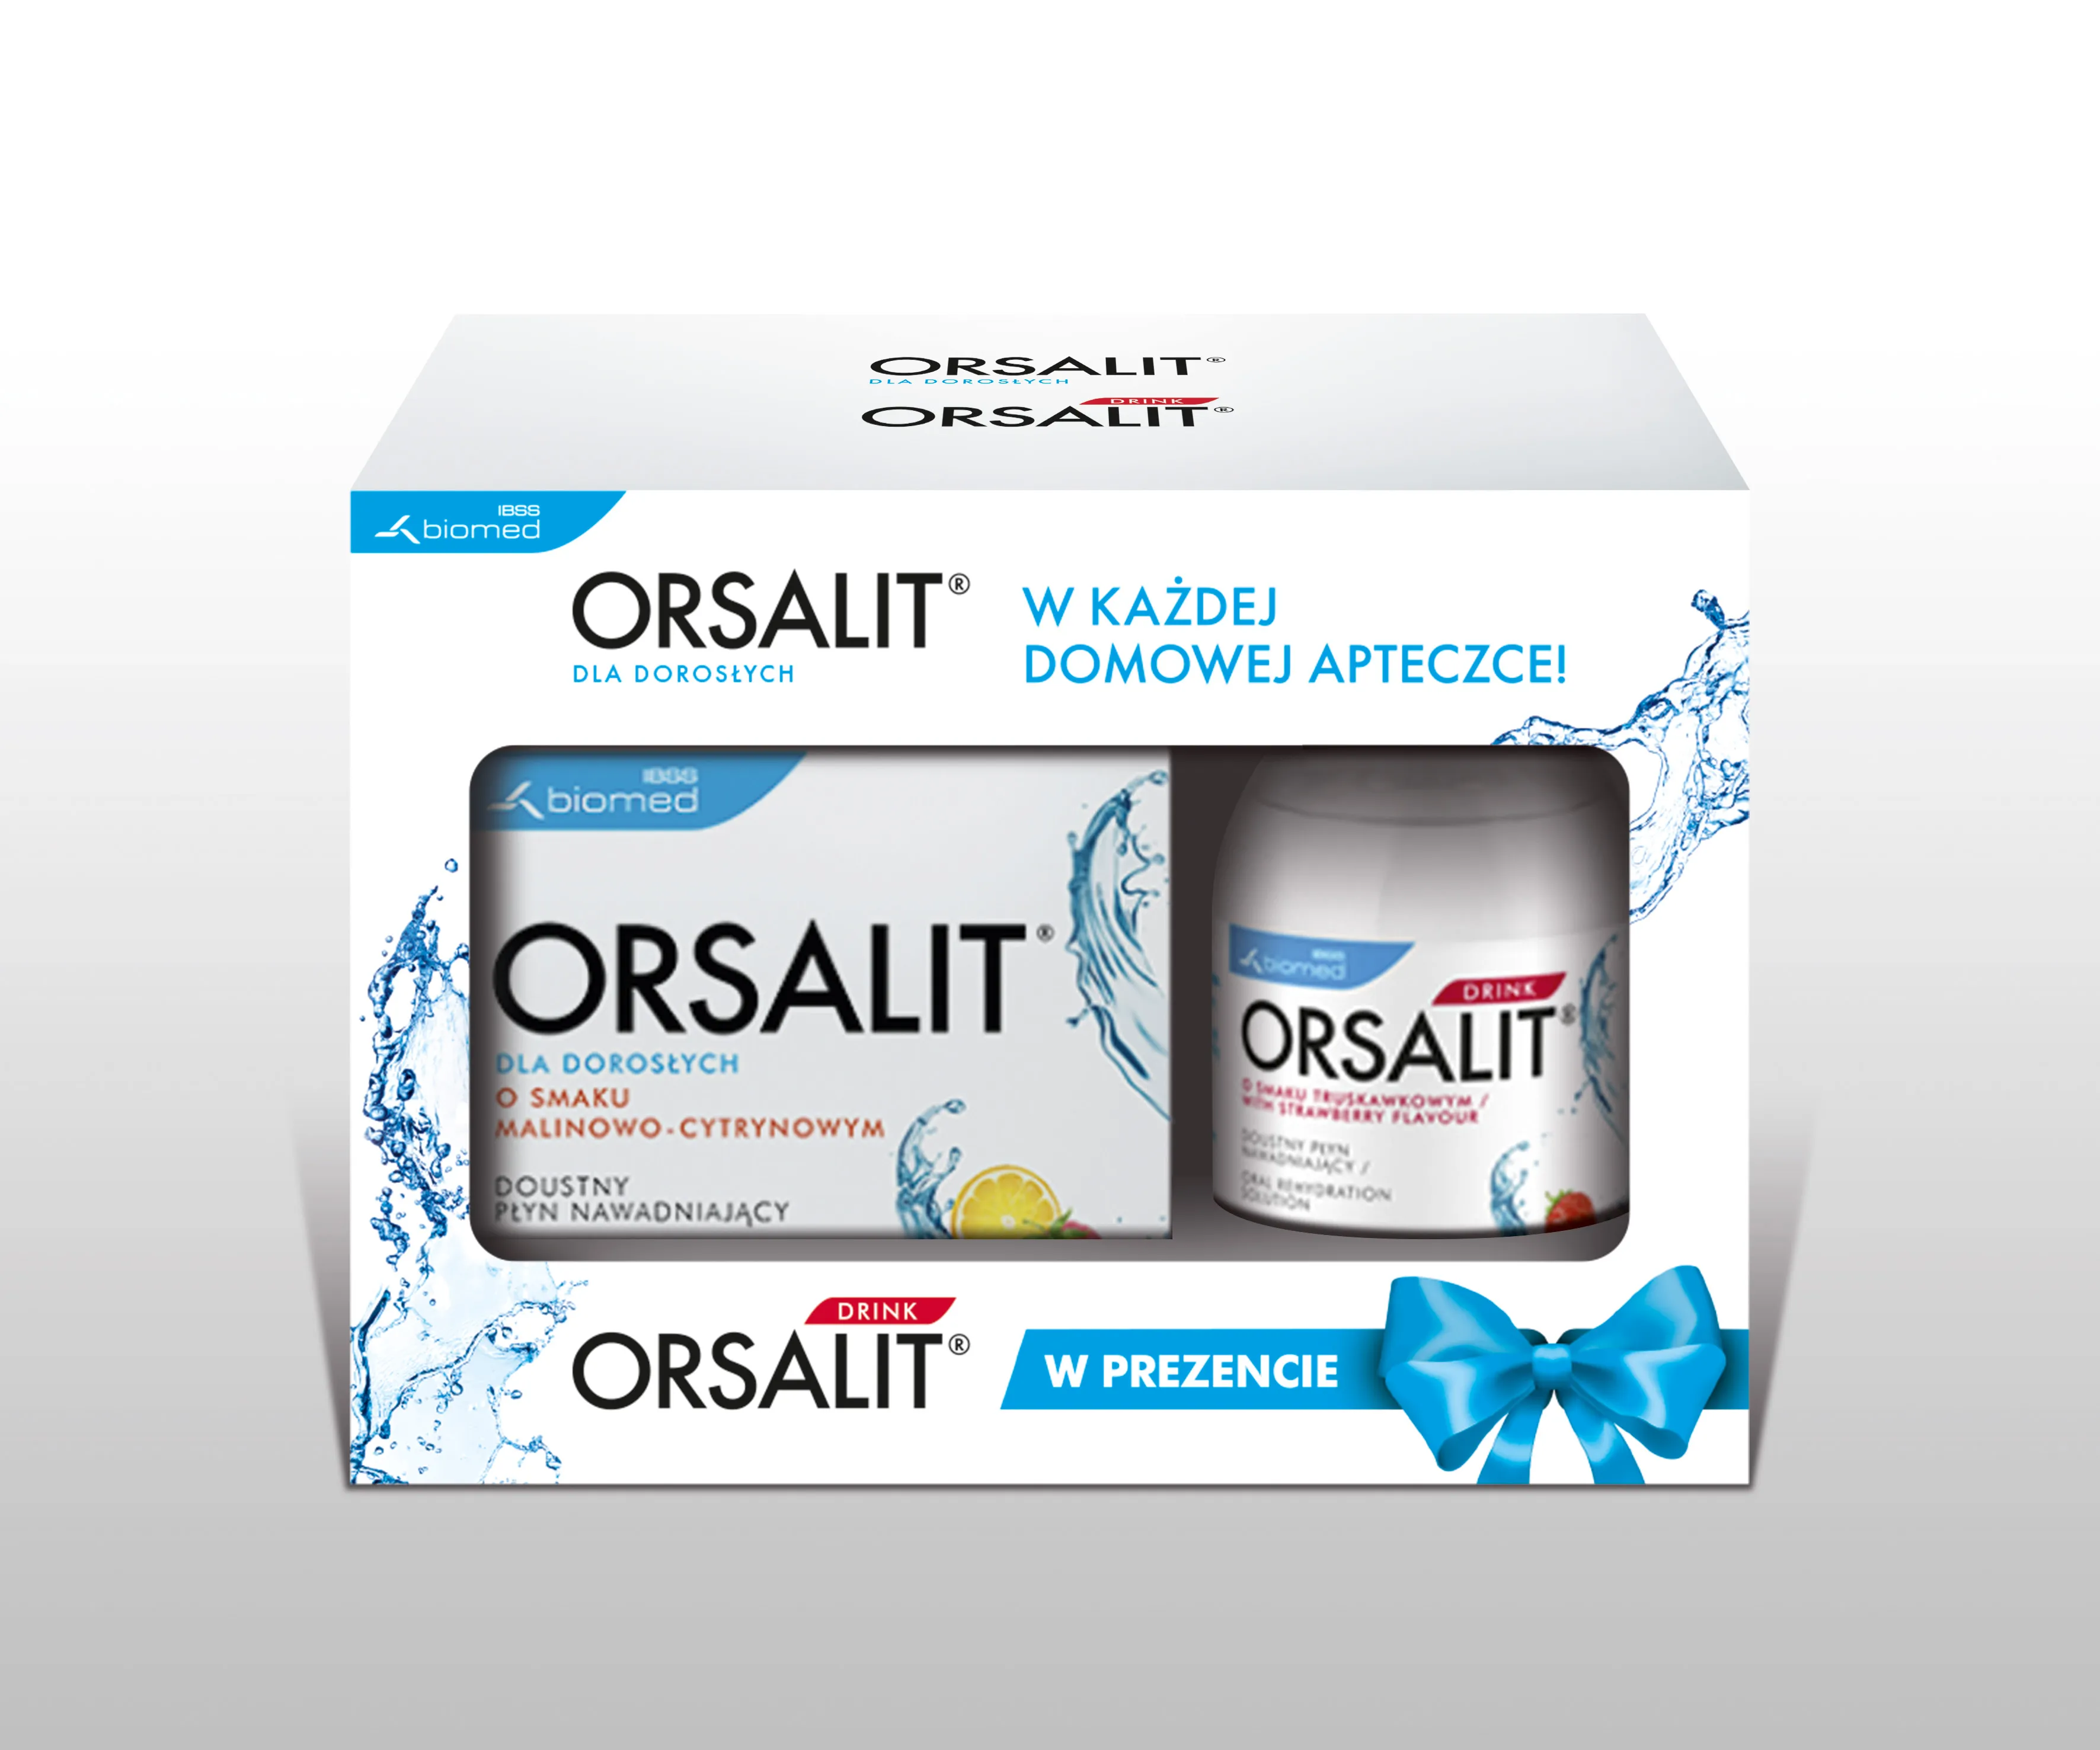 Orsalit dla dorosłych + Orsalit Drink w promocji, zestaw